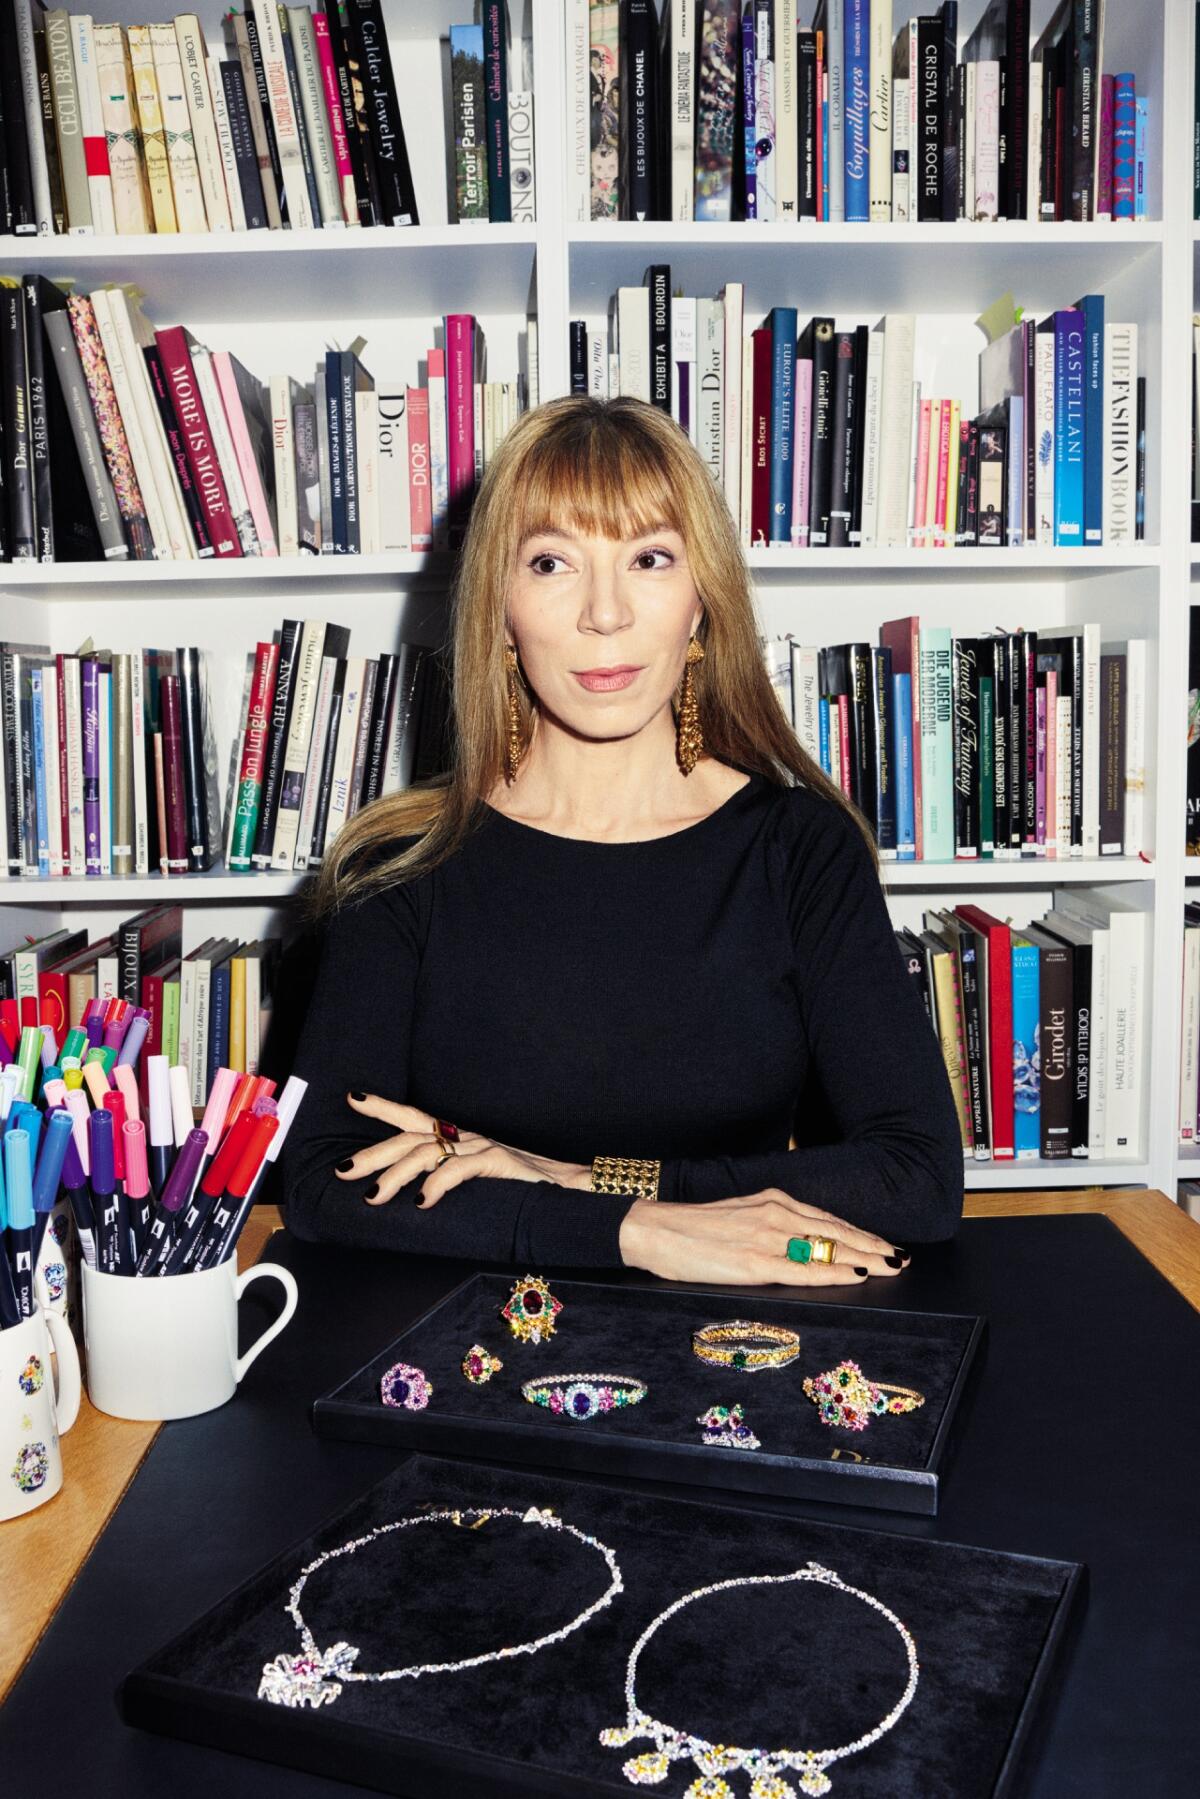 Victoire de Castellane a été nommée directrice artistique à la tête du département joaillerie de Dior en 1998.